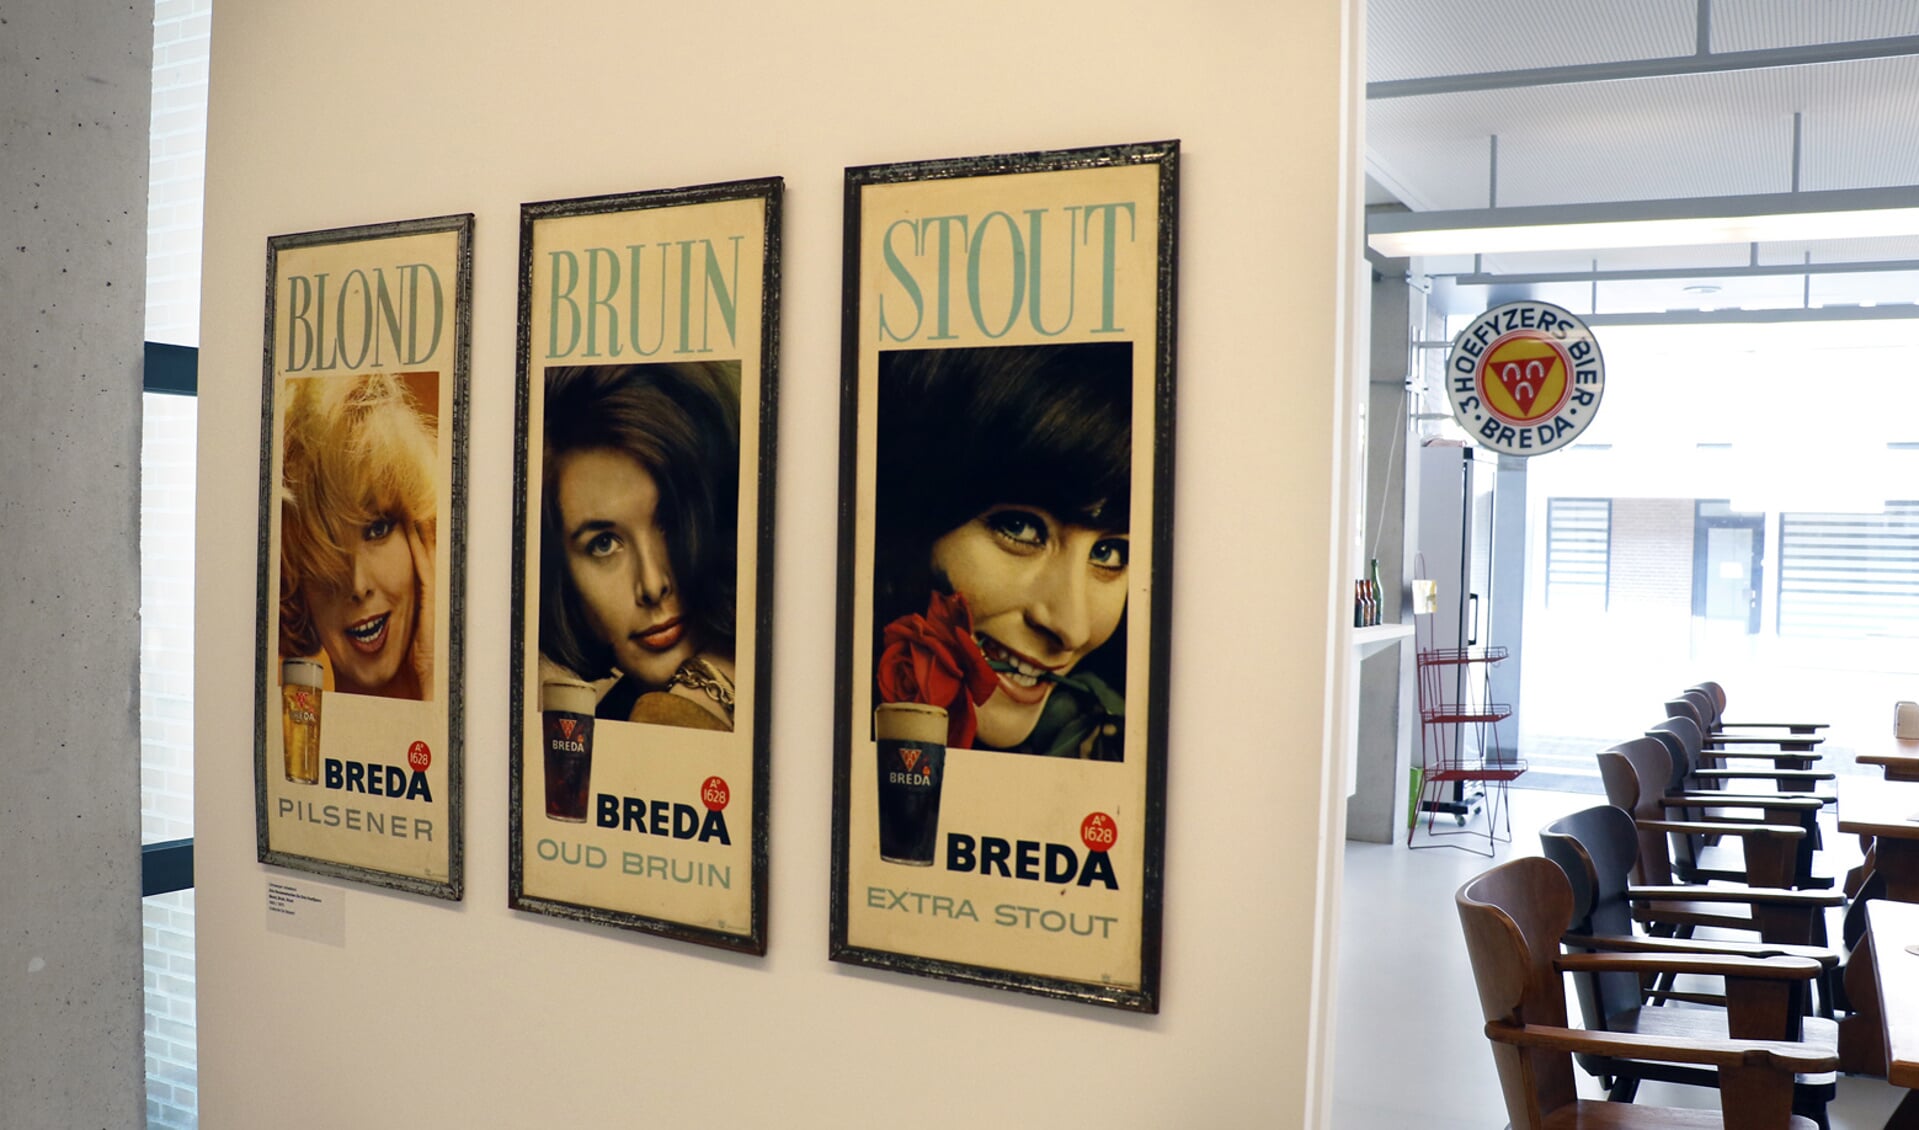 Het Stedelijk Museum heeft in expositieruimte Next tot en met 3 juni een expositie over de geschiedenis van bier in Breda.